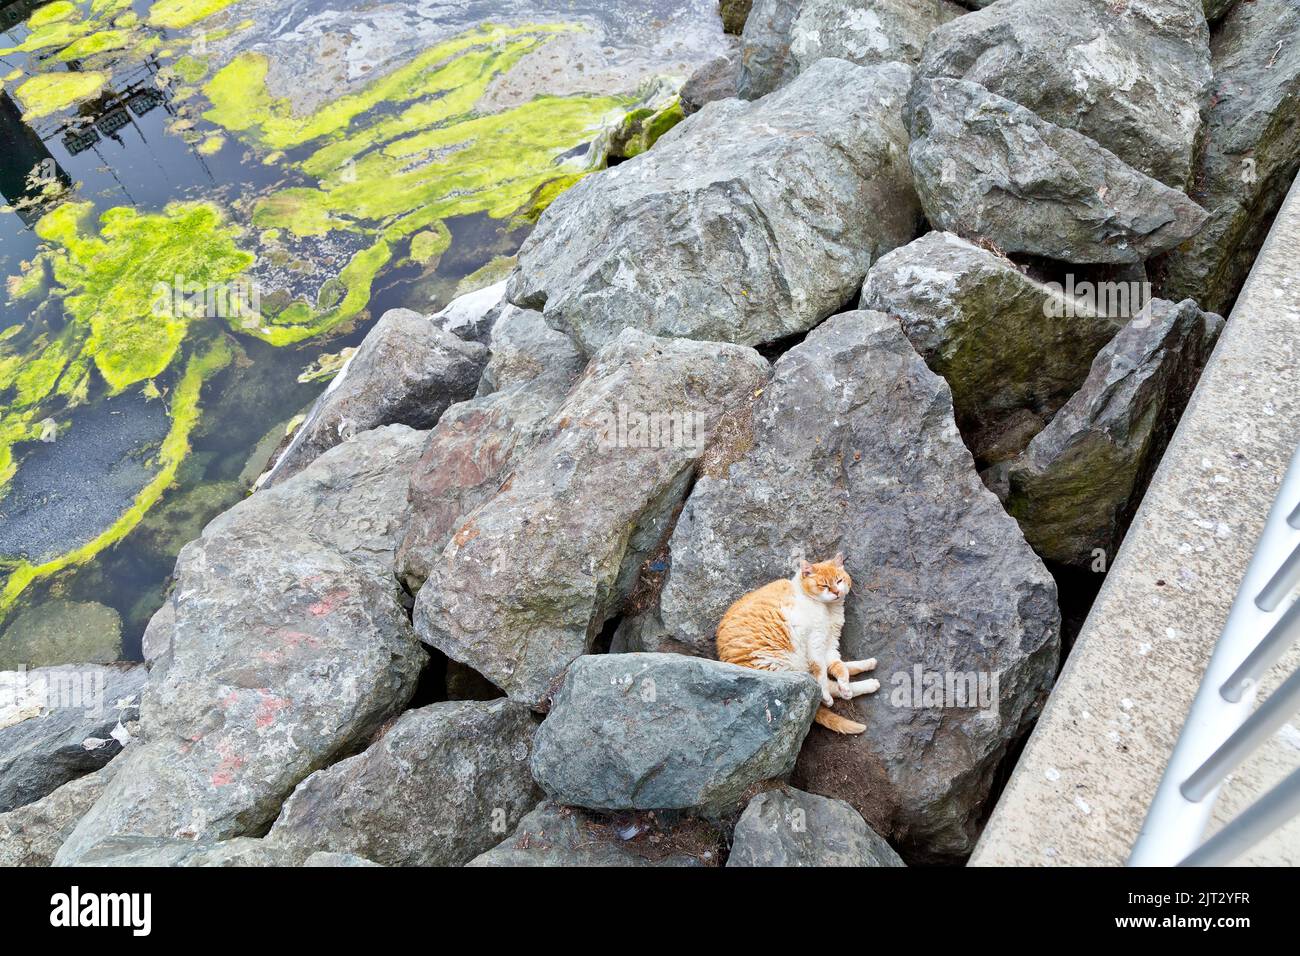 Gato abandonado, sin hogar, descuidado 'Felis catus' (gato de la casa) descansando, abandonado en el puerto. Foto de stock